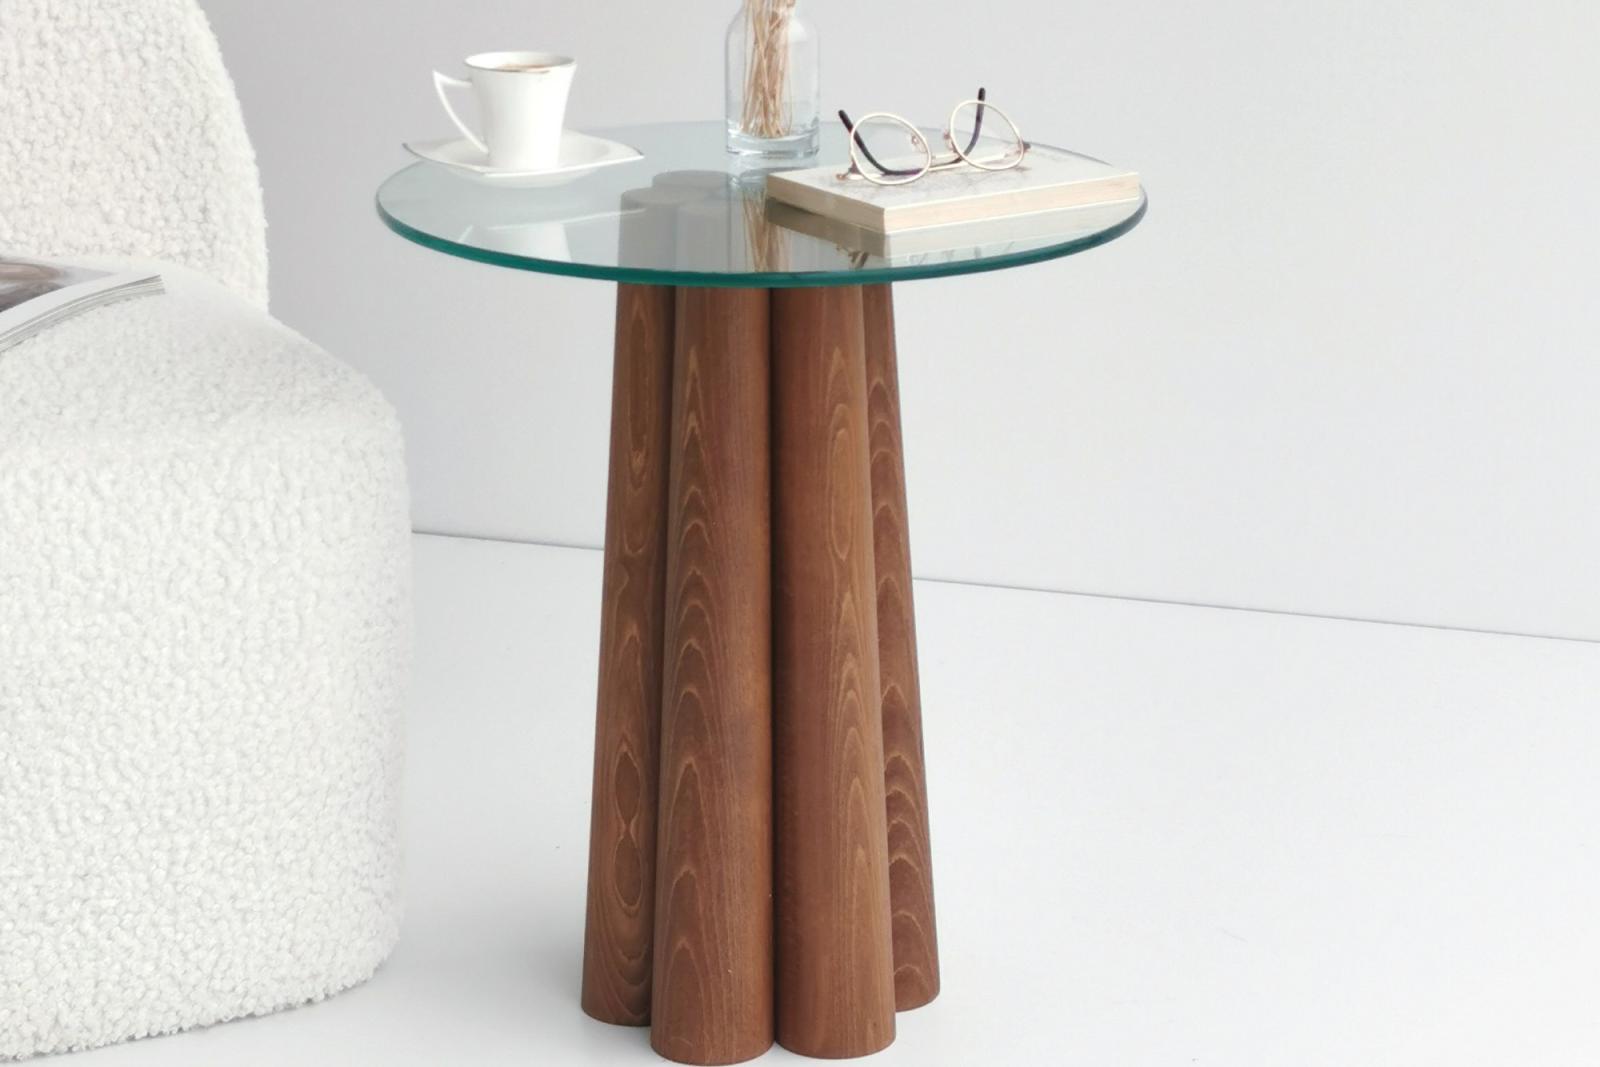 Masívny konferenčný stolík CLAN 50 cm, borovica, hnedý